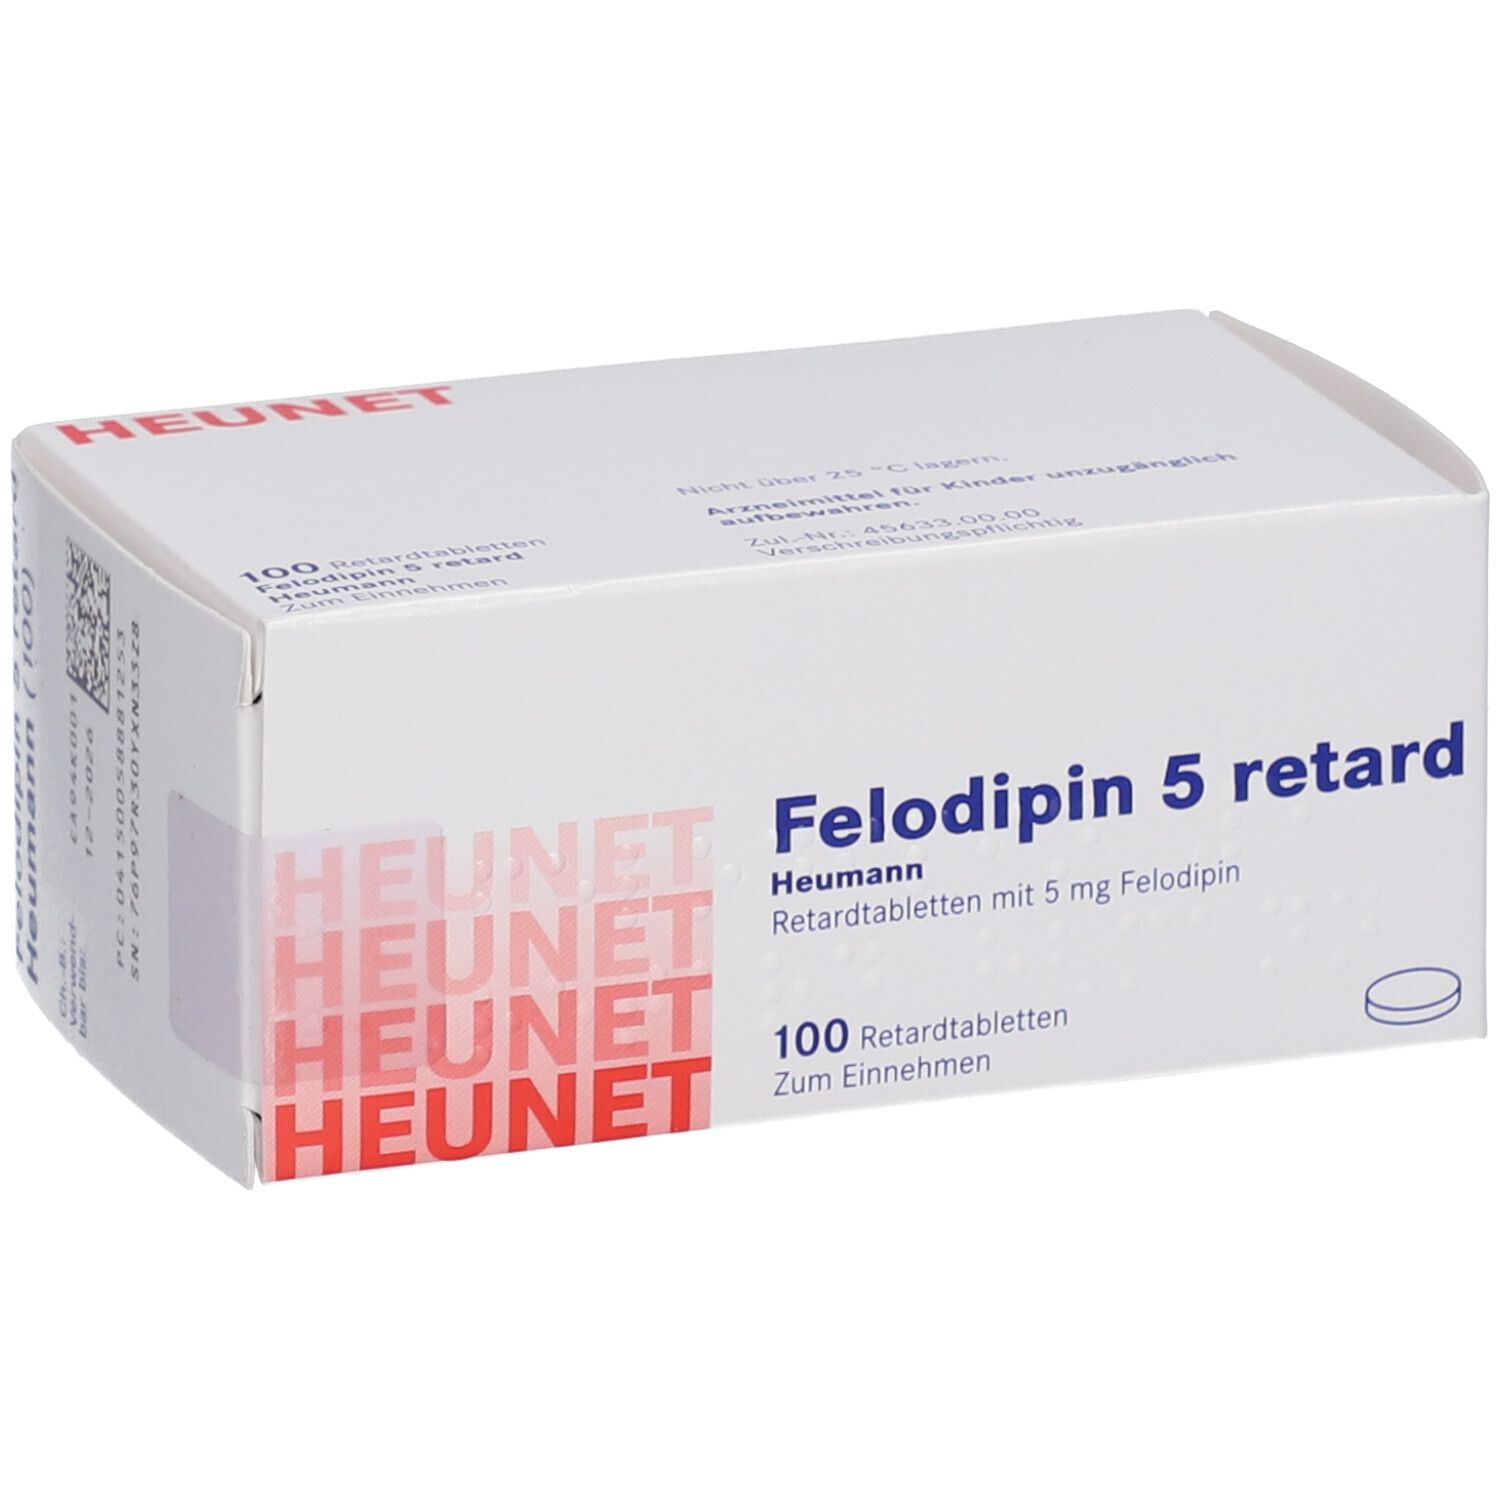 FELODIPIN 5 mg ret.Heumann Tabl.Heunet